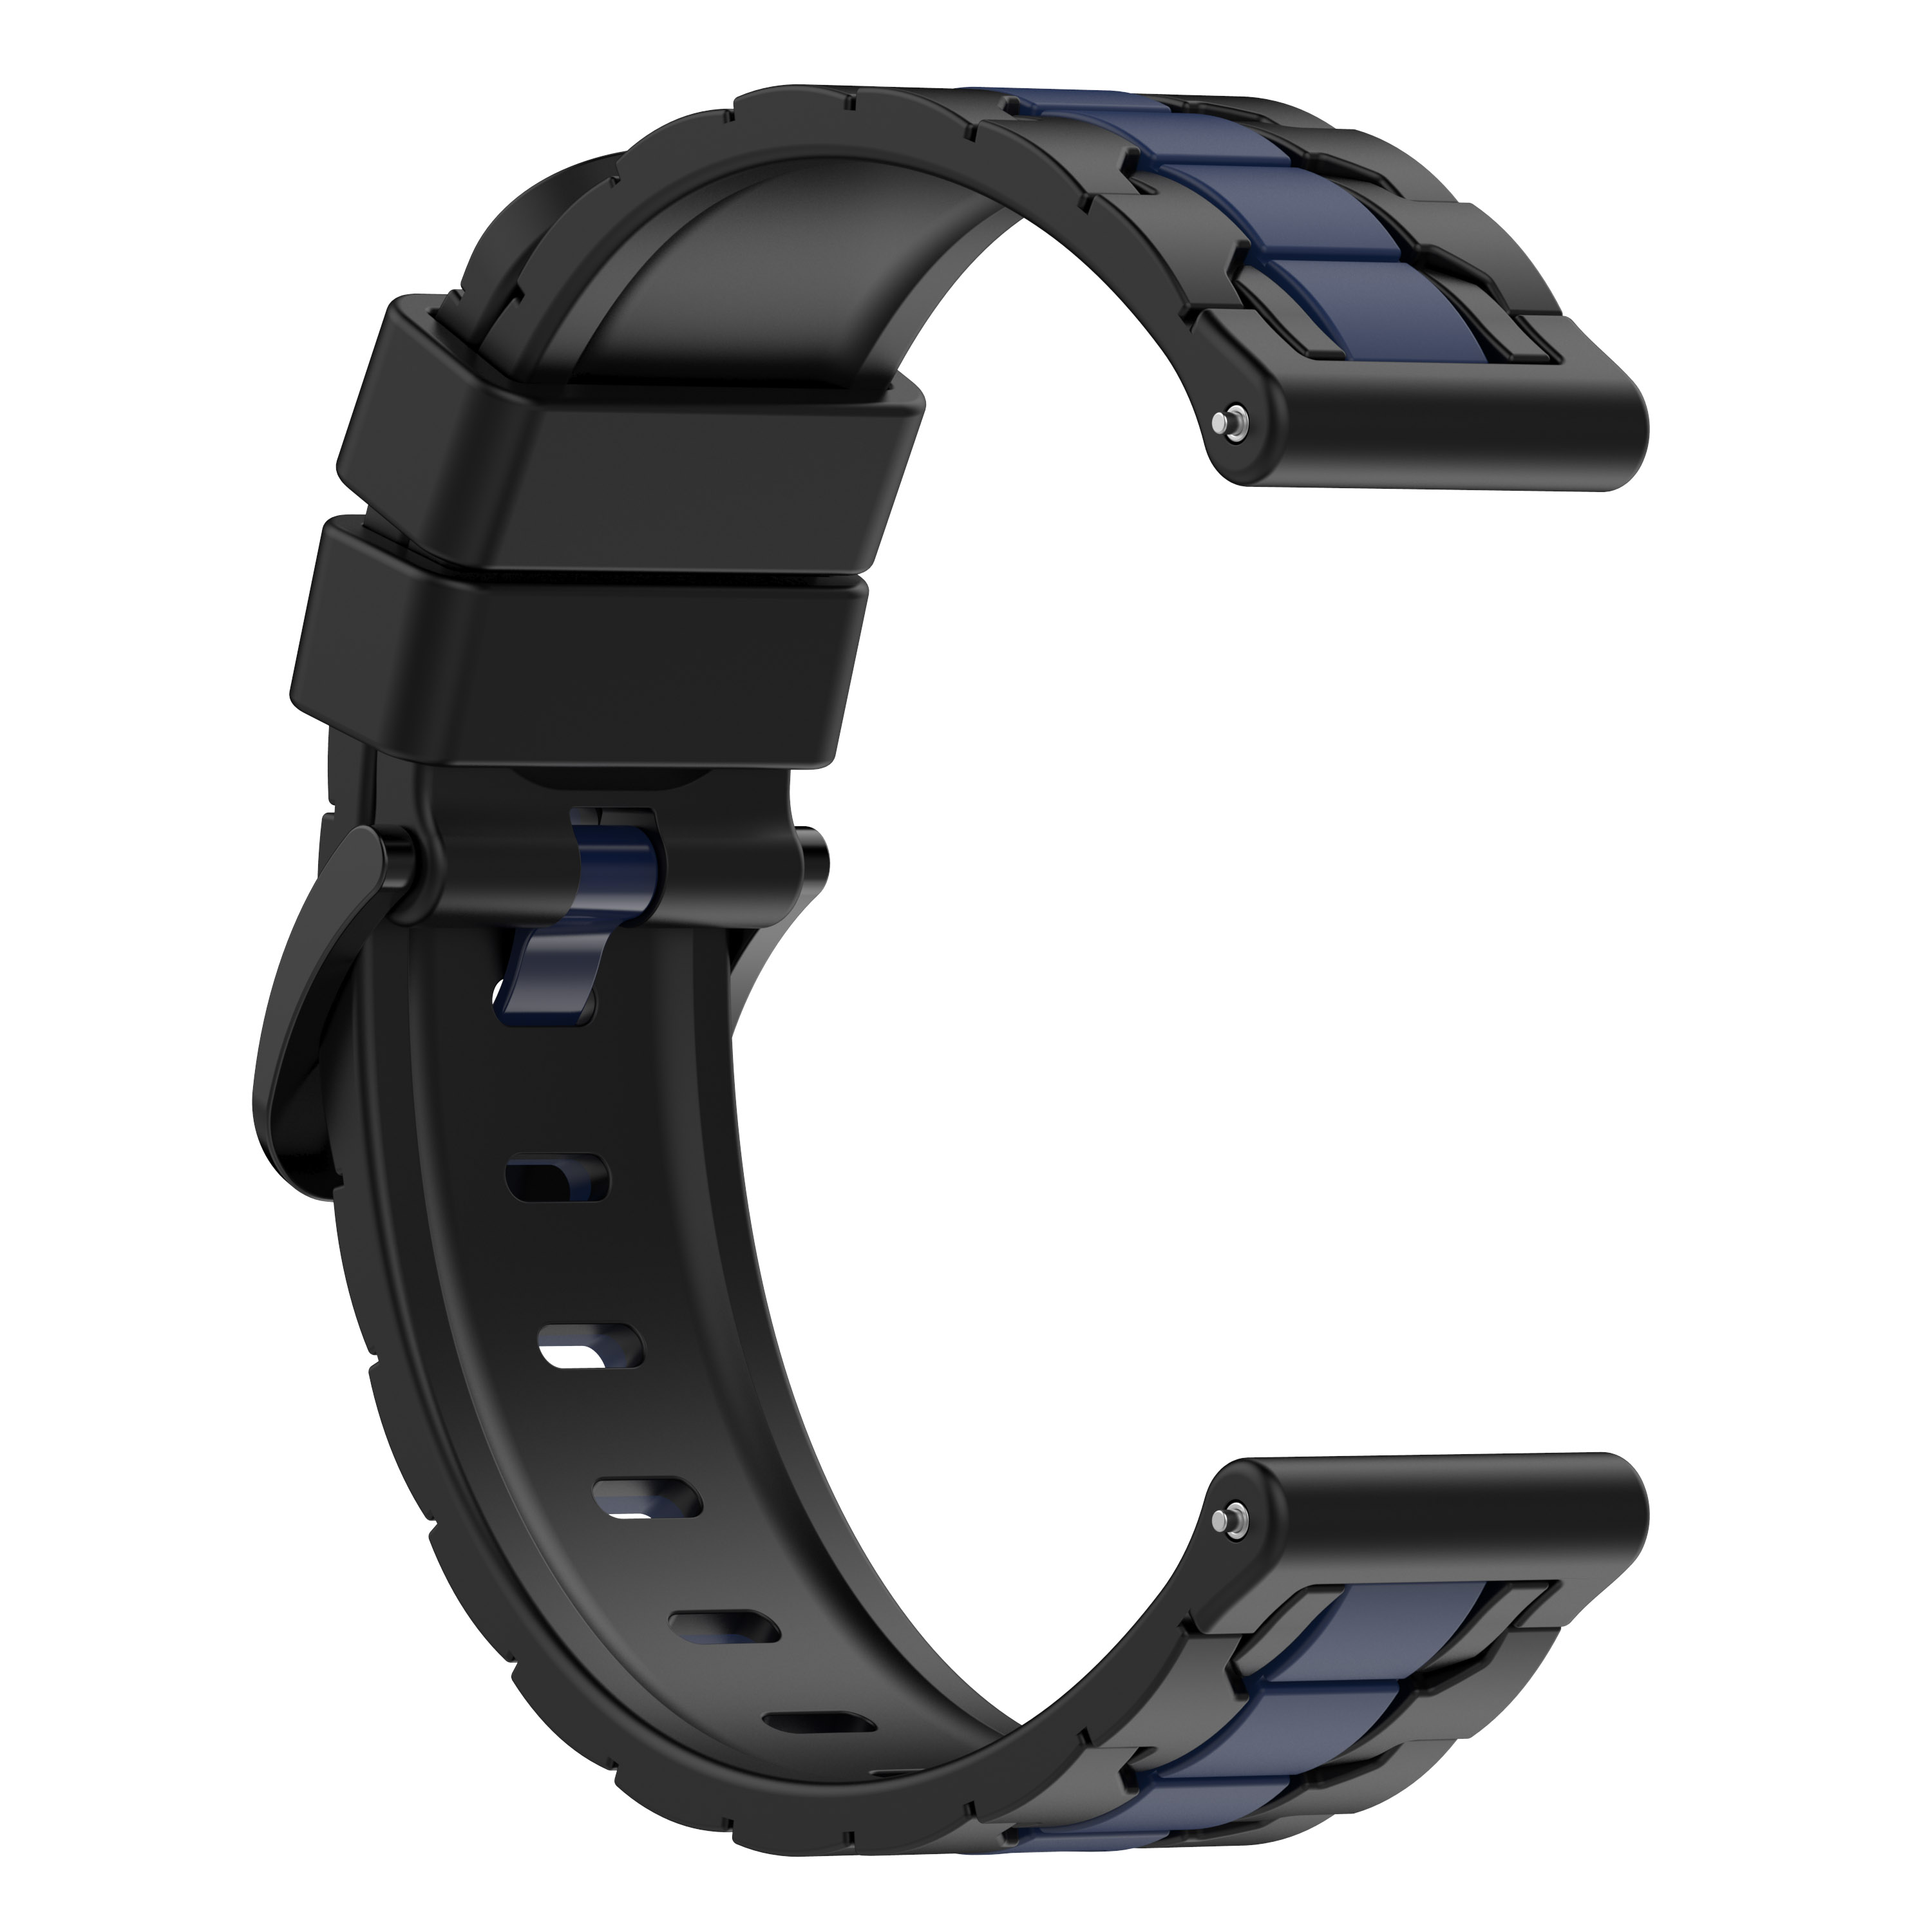 INF Uhrenarmband Silikon schwarz/blau Ersatzarmband, universal, Schwarz/Blau mm, 22 universal